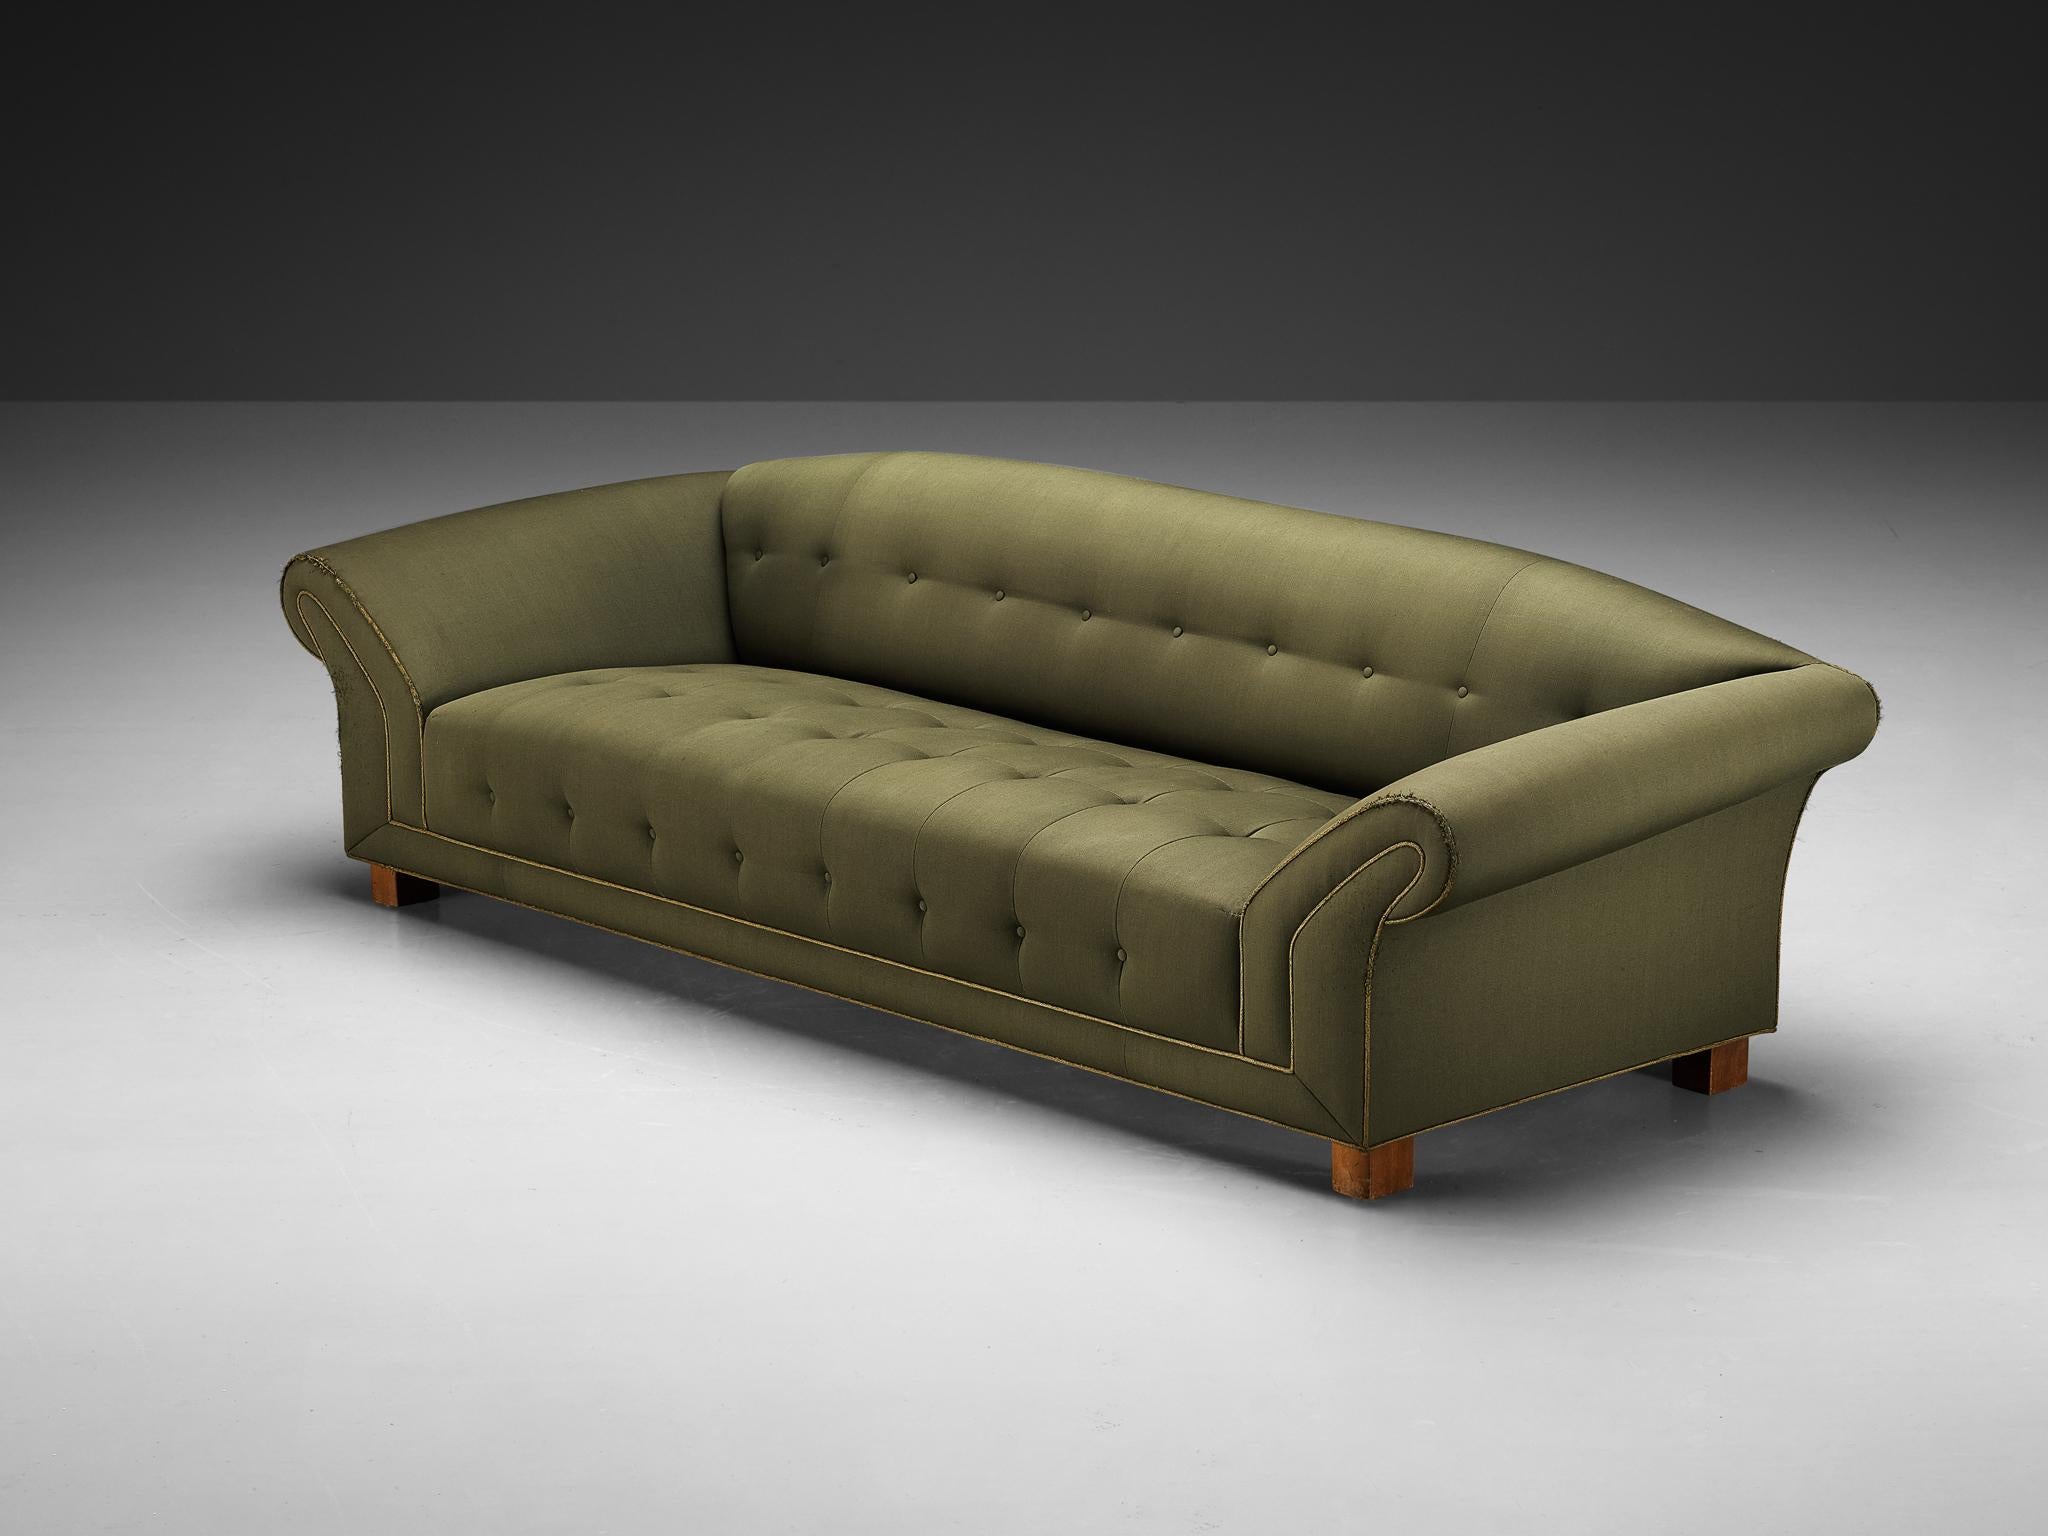 Sofa, Stoff, gebeizte Buche, Schweden, 1930er Jahre

Ein anmutiges schwedisches Sofa aus den 1930er Jahren mit ausgeprägten Art-déco-Einflüssen. Zu seinen charakteristischen Merkmalen gehört ein großzügiges und robustes Gestell mit einem